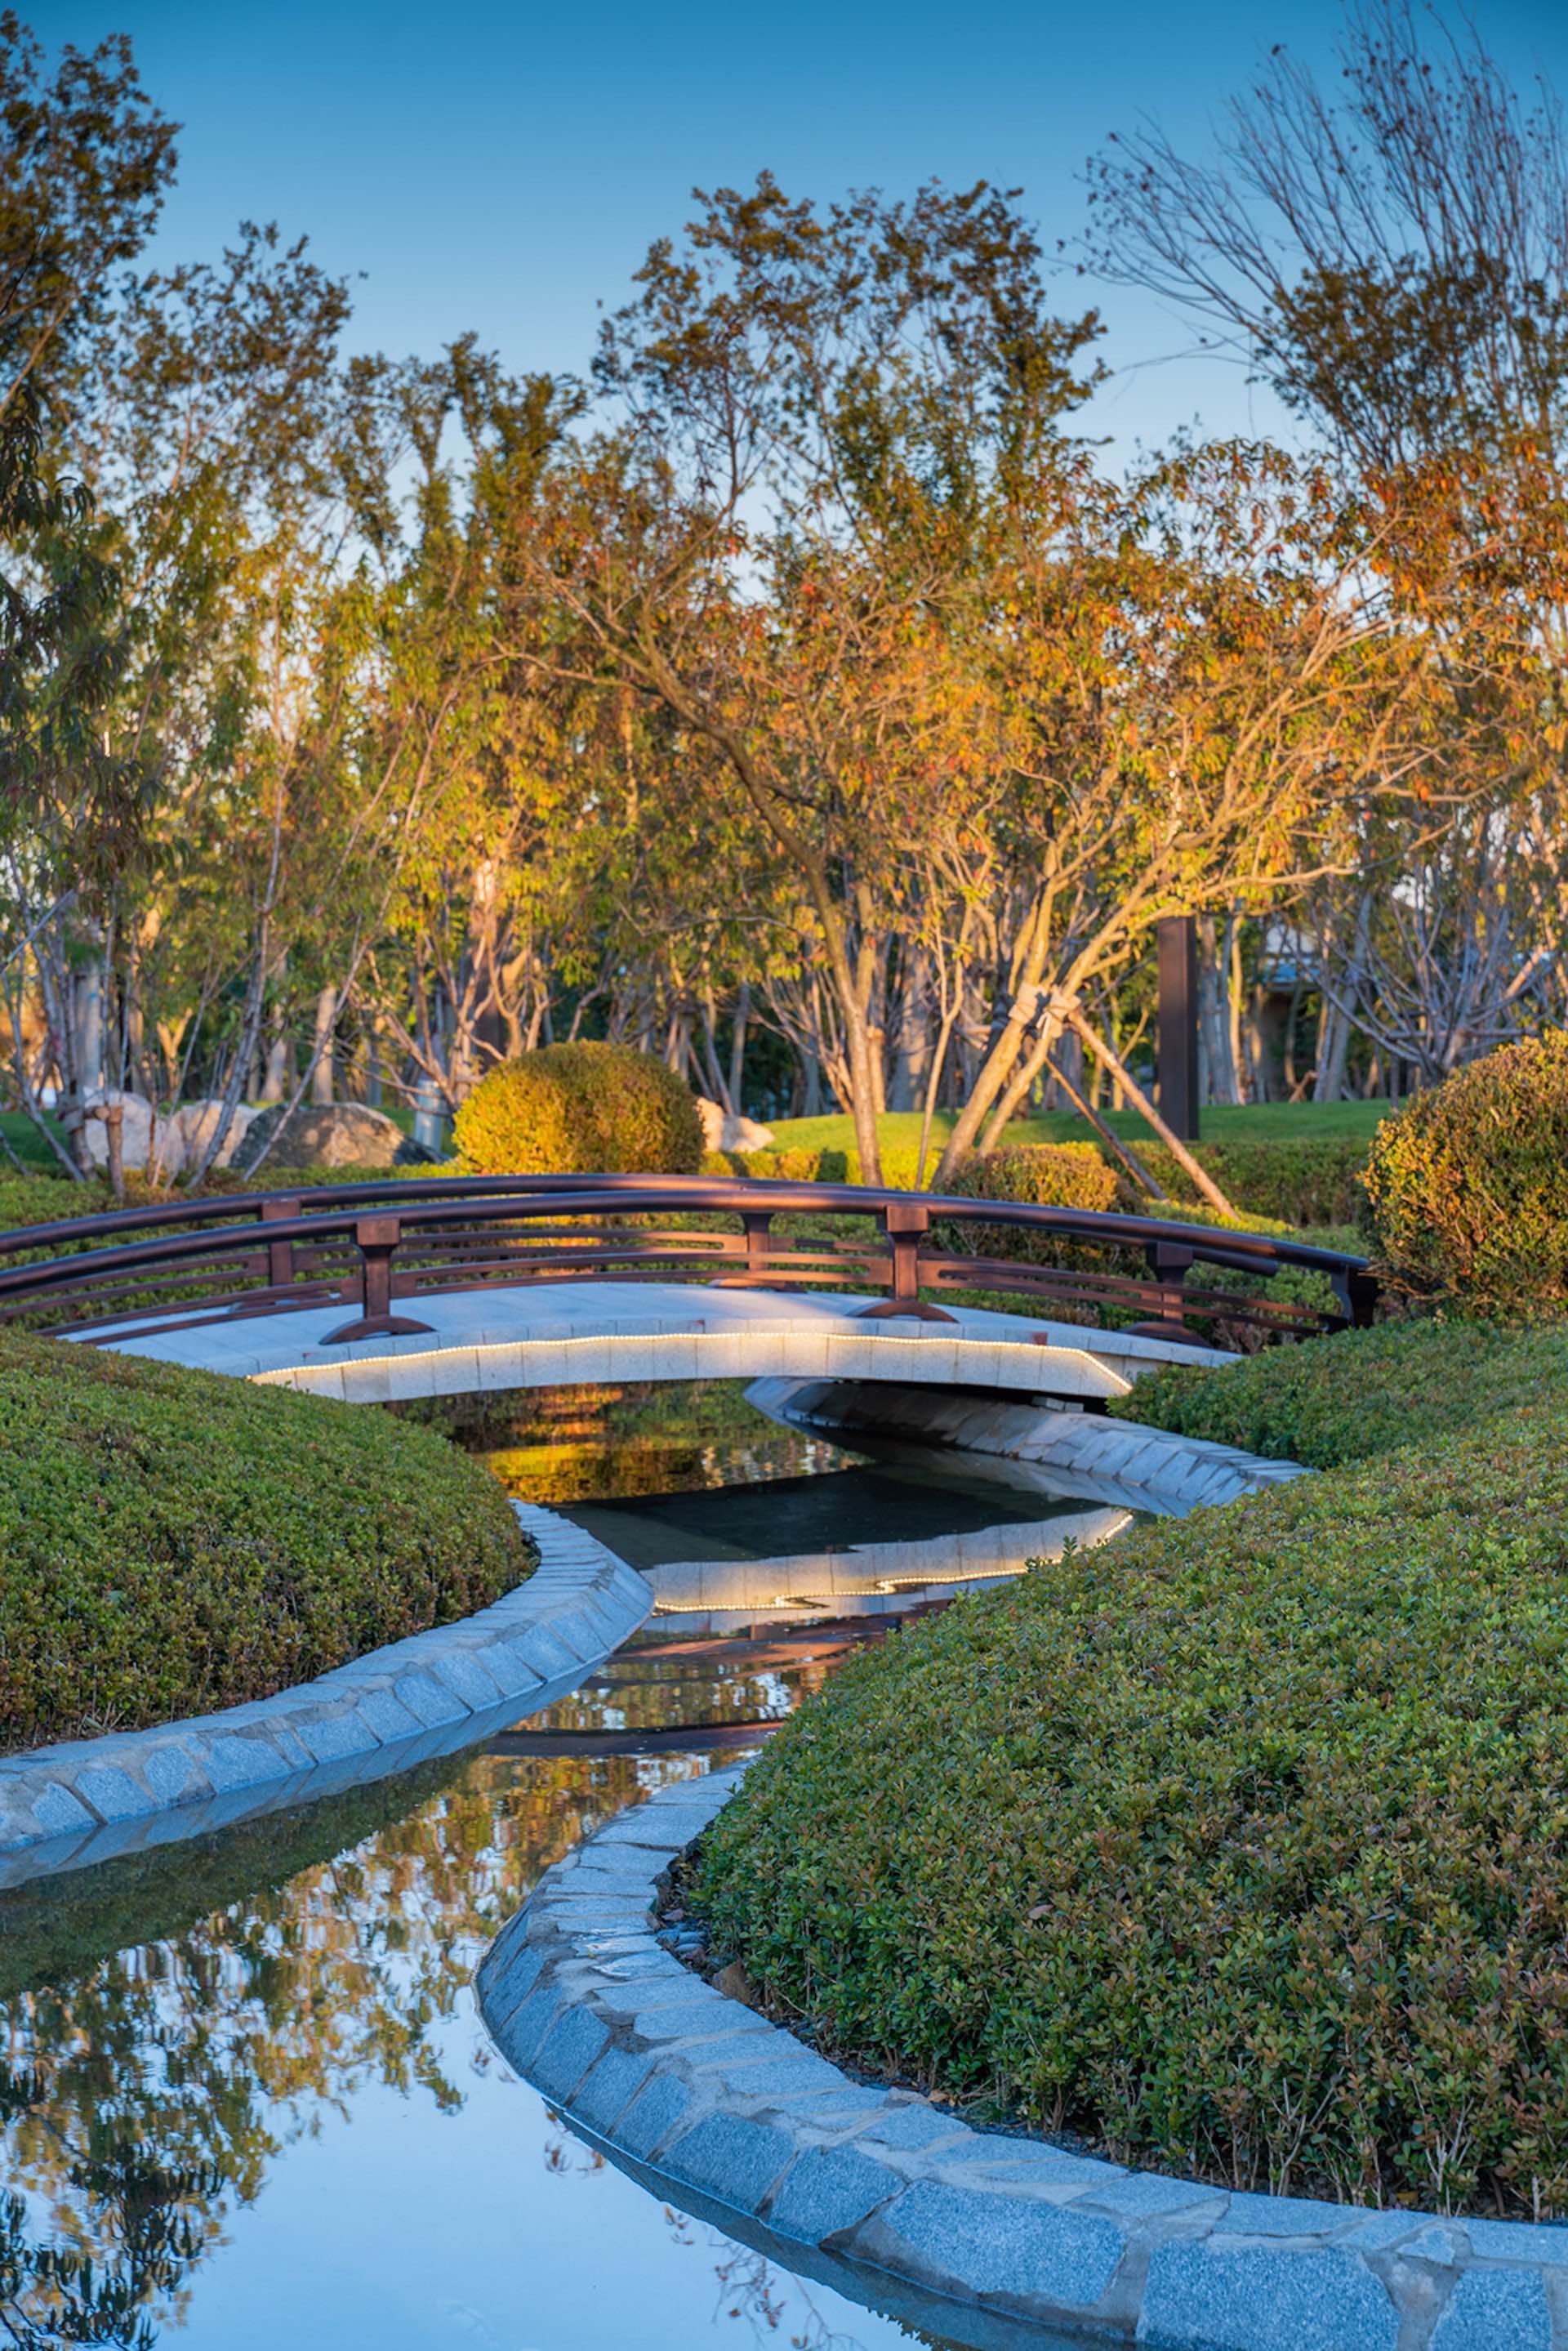 MUSE Design Winners - Dalian Palace Lake Landscape Design